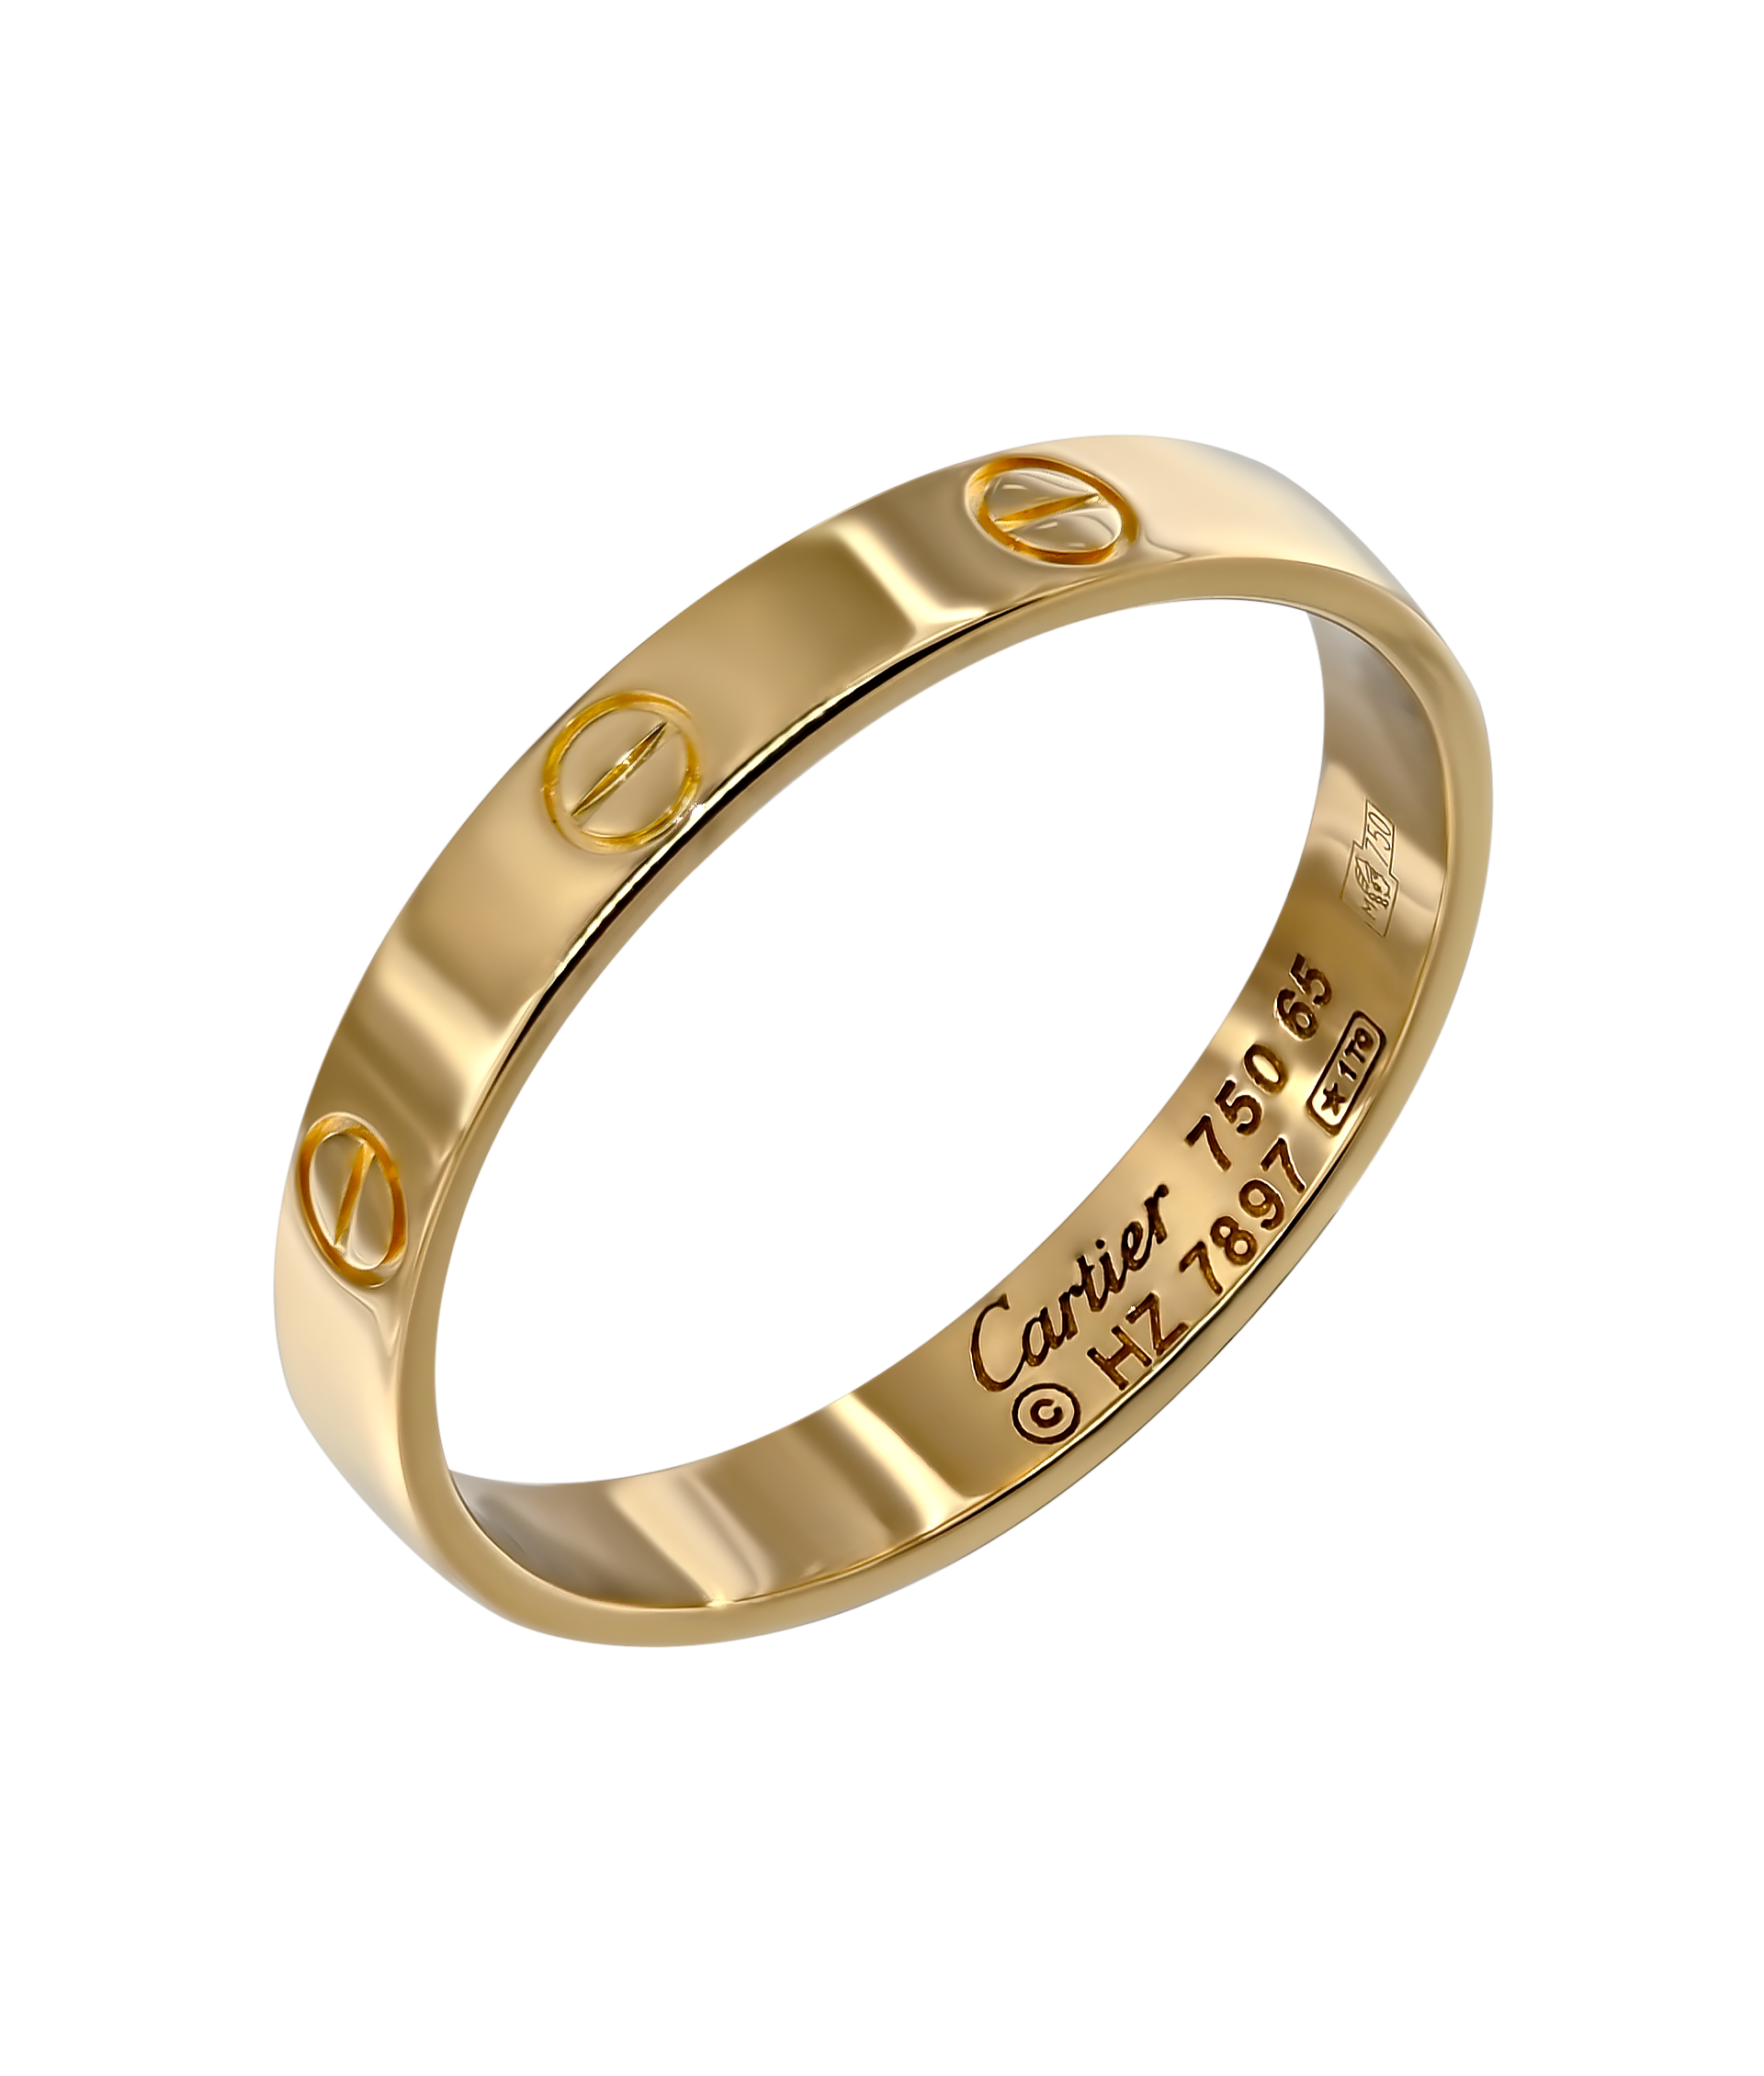 Кольцо Cartier Love из желтого золота 750 пробы 11273 - купить сегодня за 30303 руб. Интернет ломбард «Тик – Так» в Москве